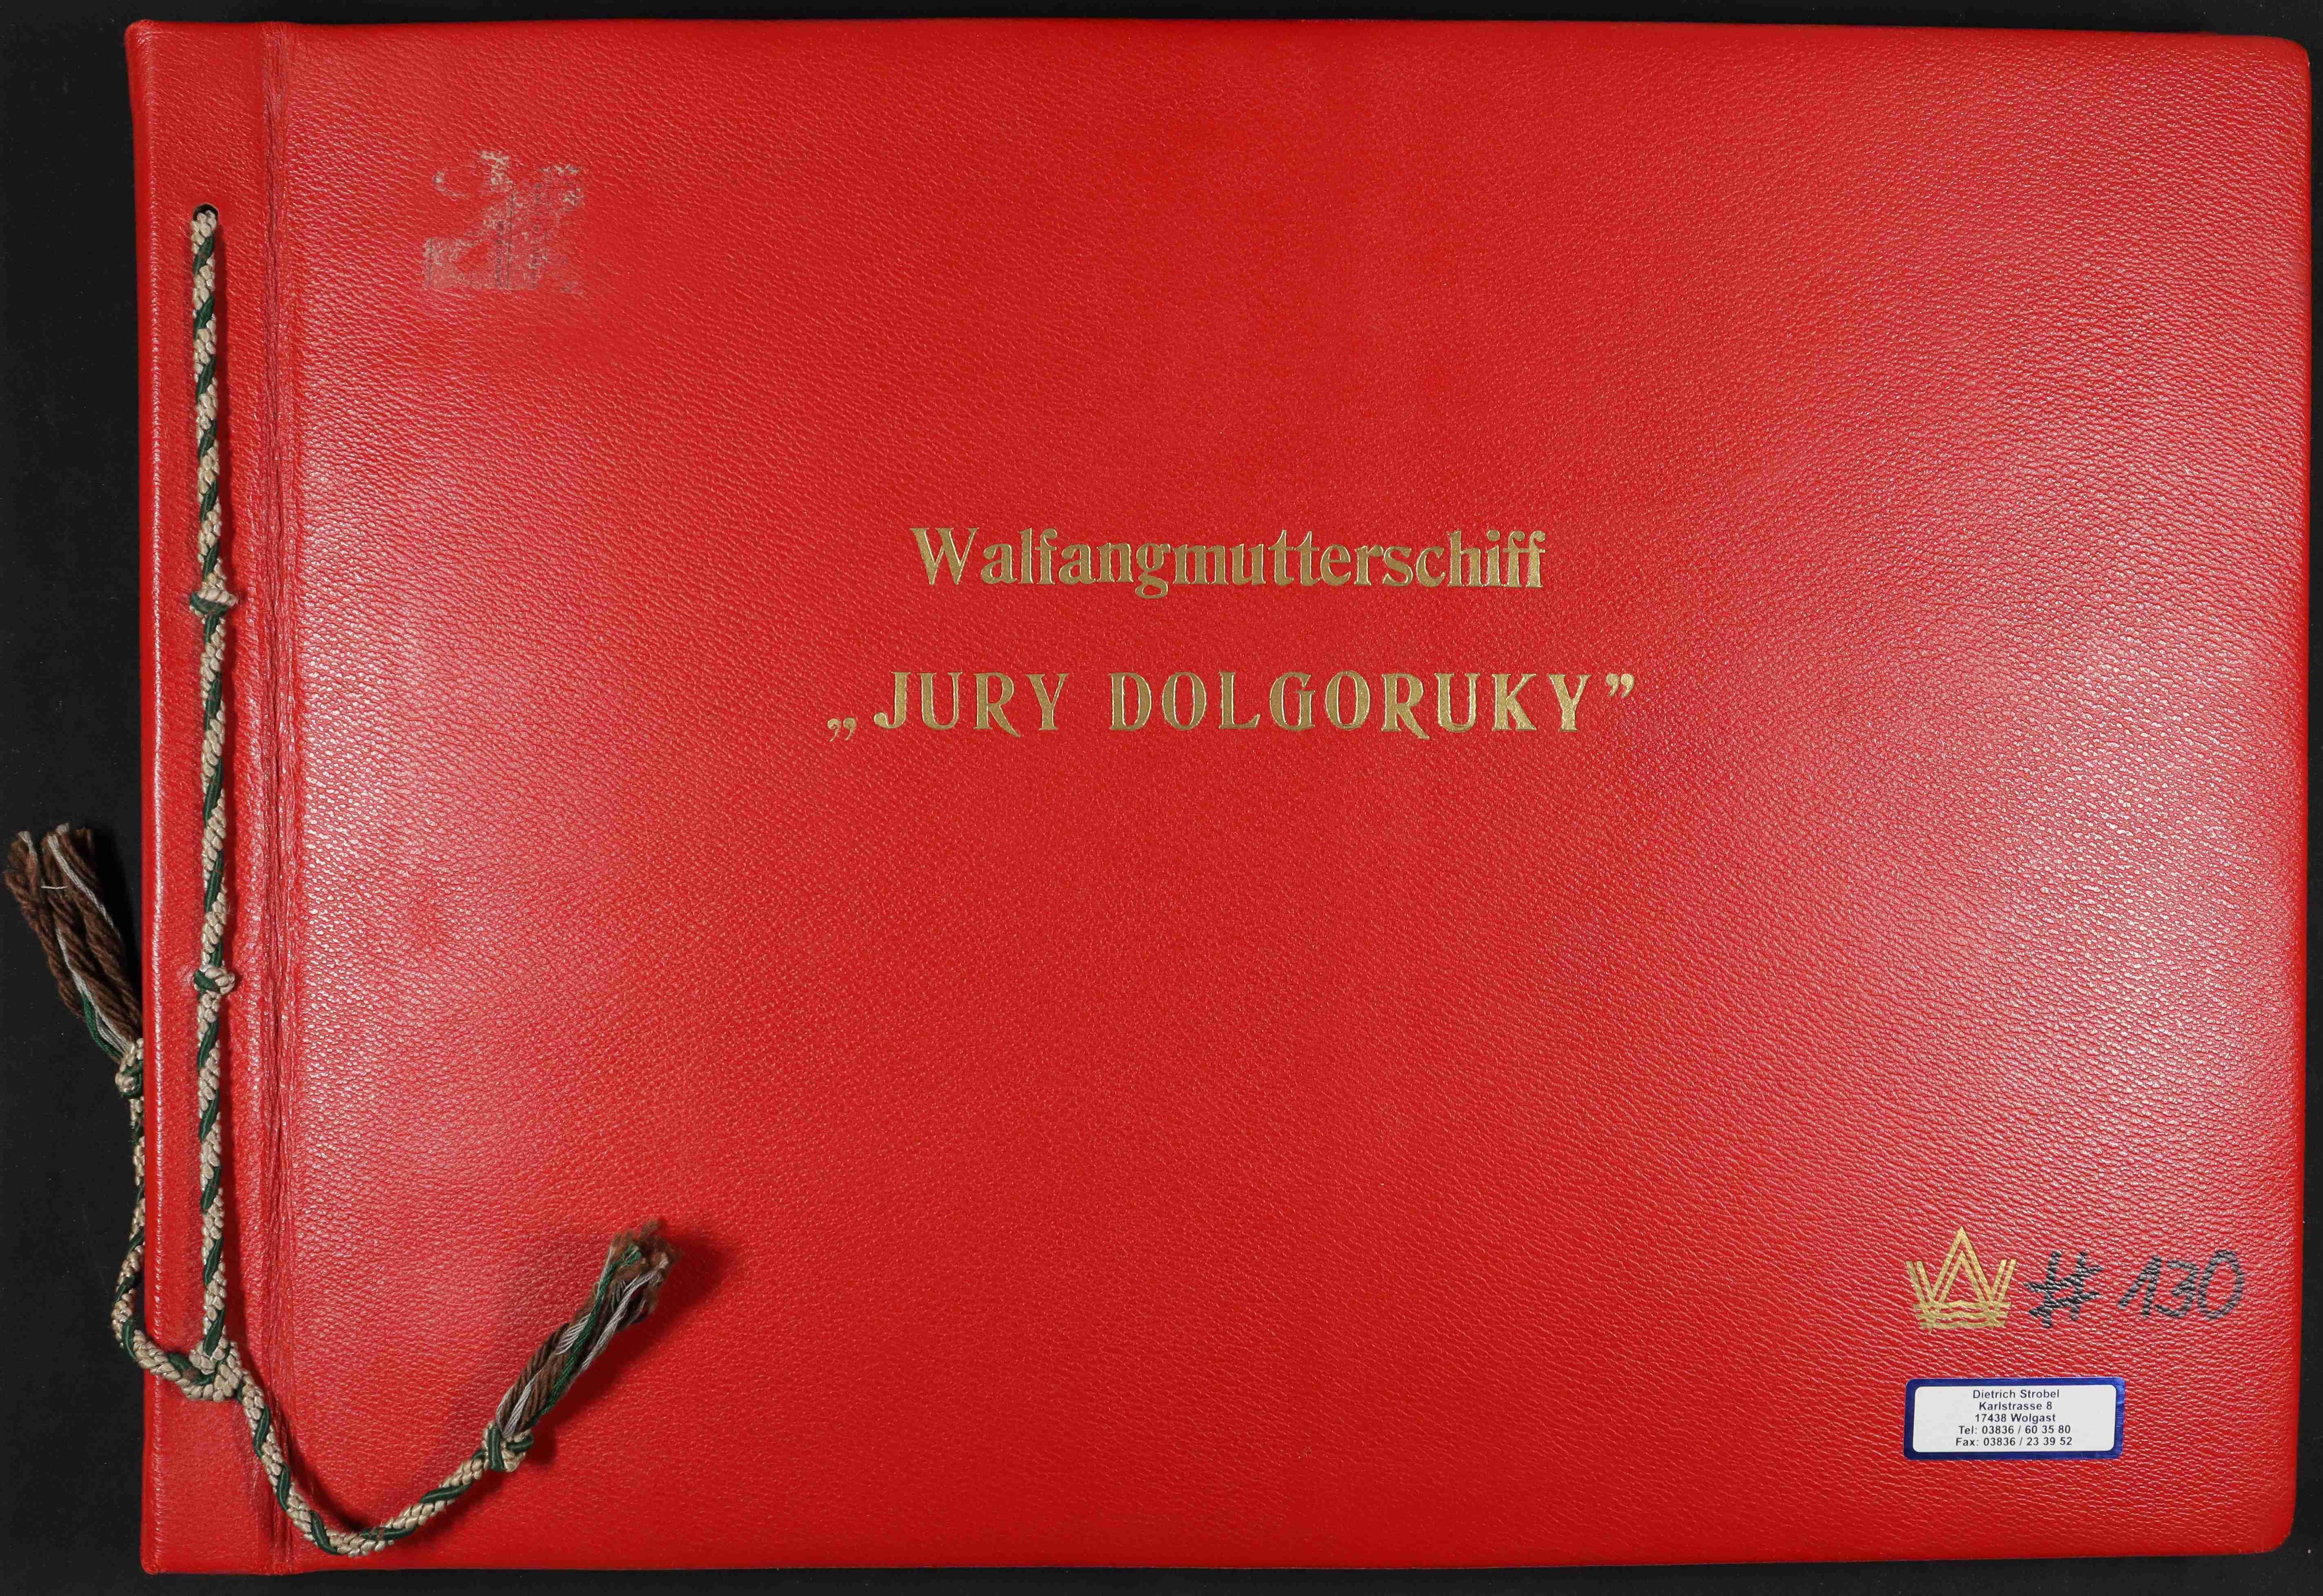 Umbau der "Hamburg" zur "Juri Dolgoruki" auf der Warnowwerft, 1955 bis 1960 (Schiffbau- und Schiffahrtsmuseum Rostock RR-F)